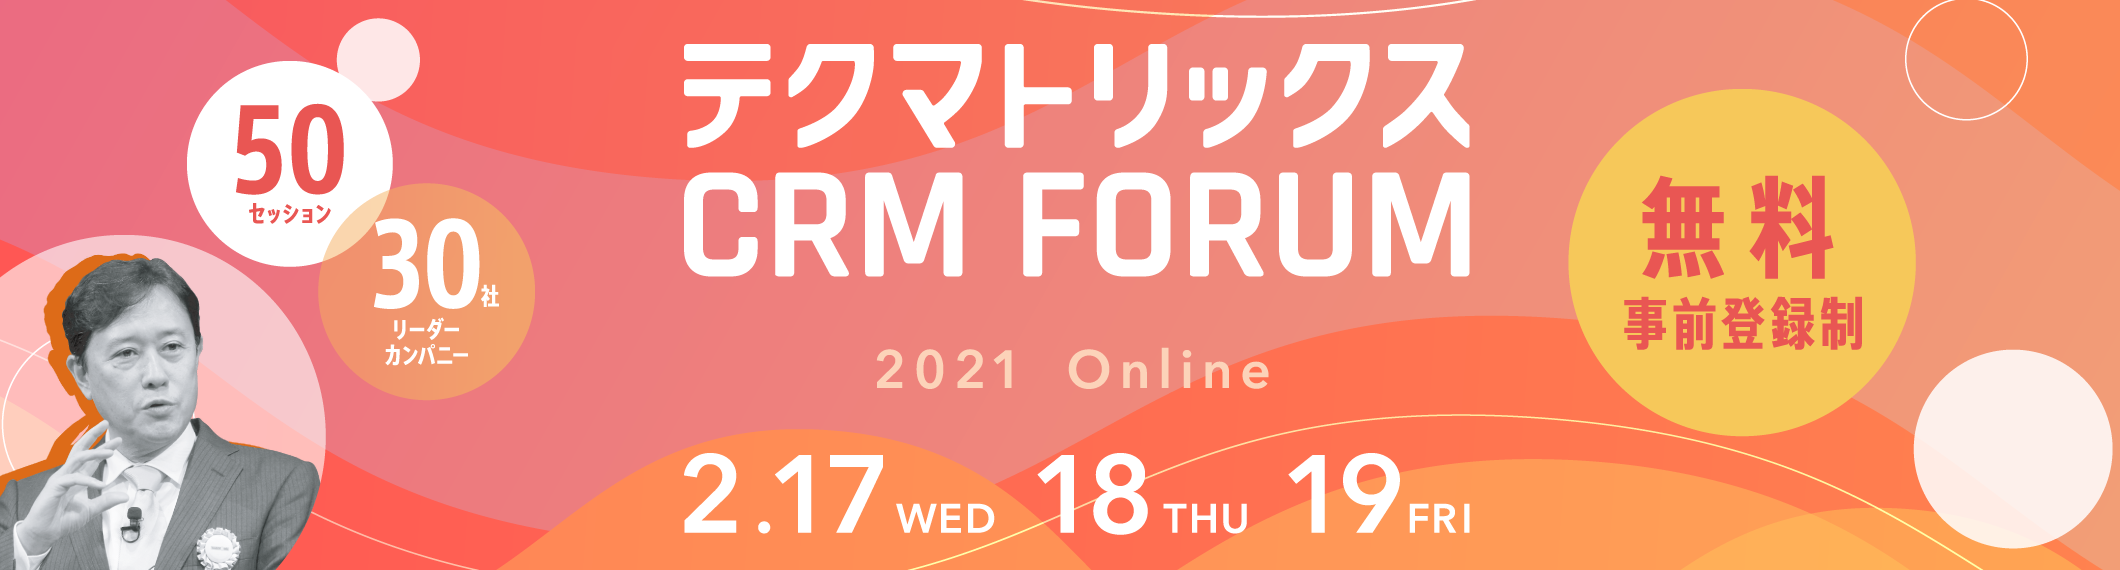 テクマトリックス CRM FORUM 2021 2021 Online 2.17(WED) 18(THU) 19(FRI) 50セッション 30社リーダーカンパニー 無料 事前登録制